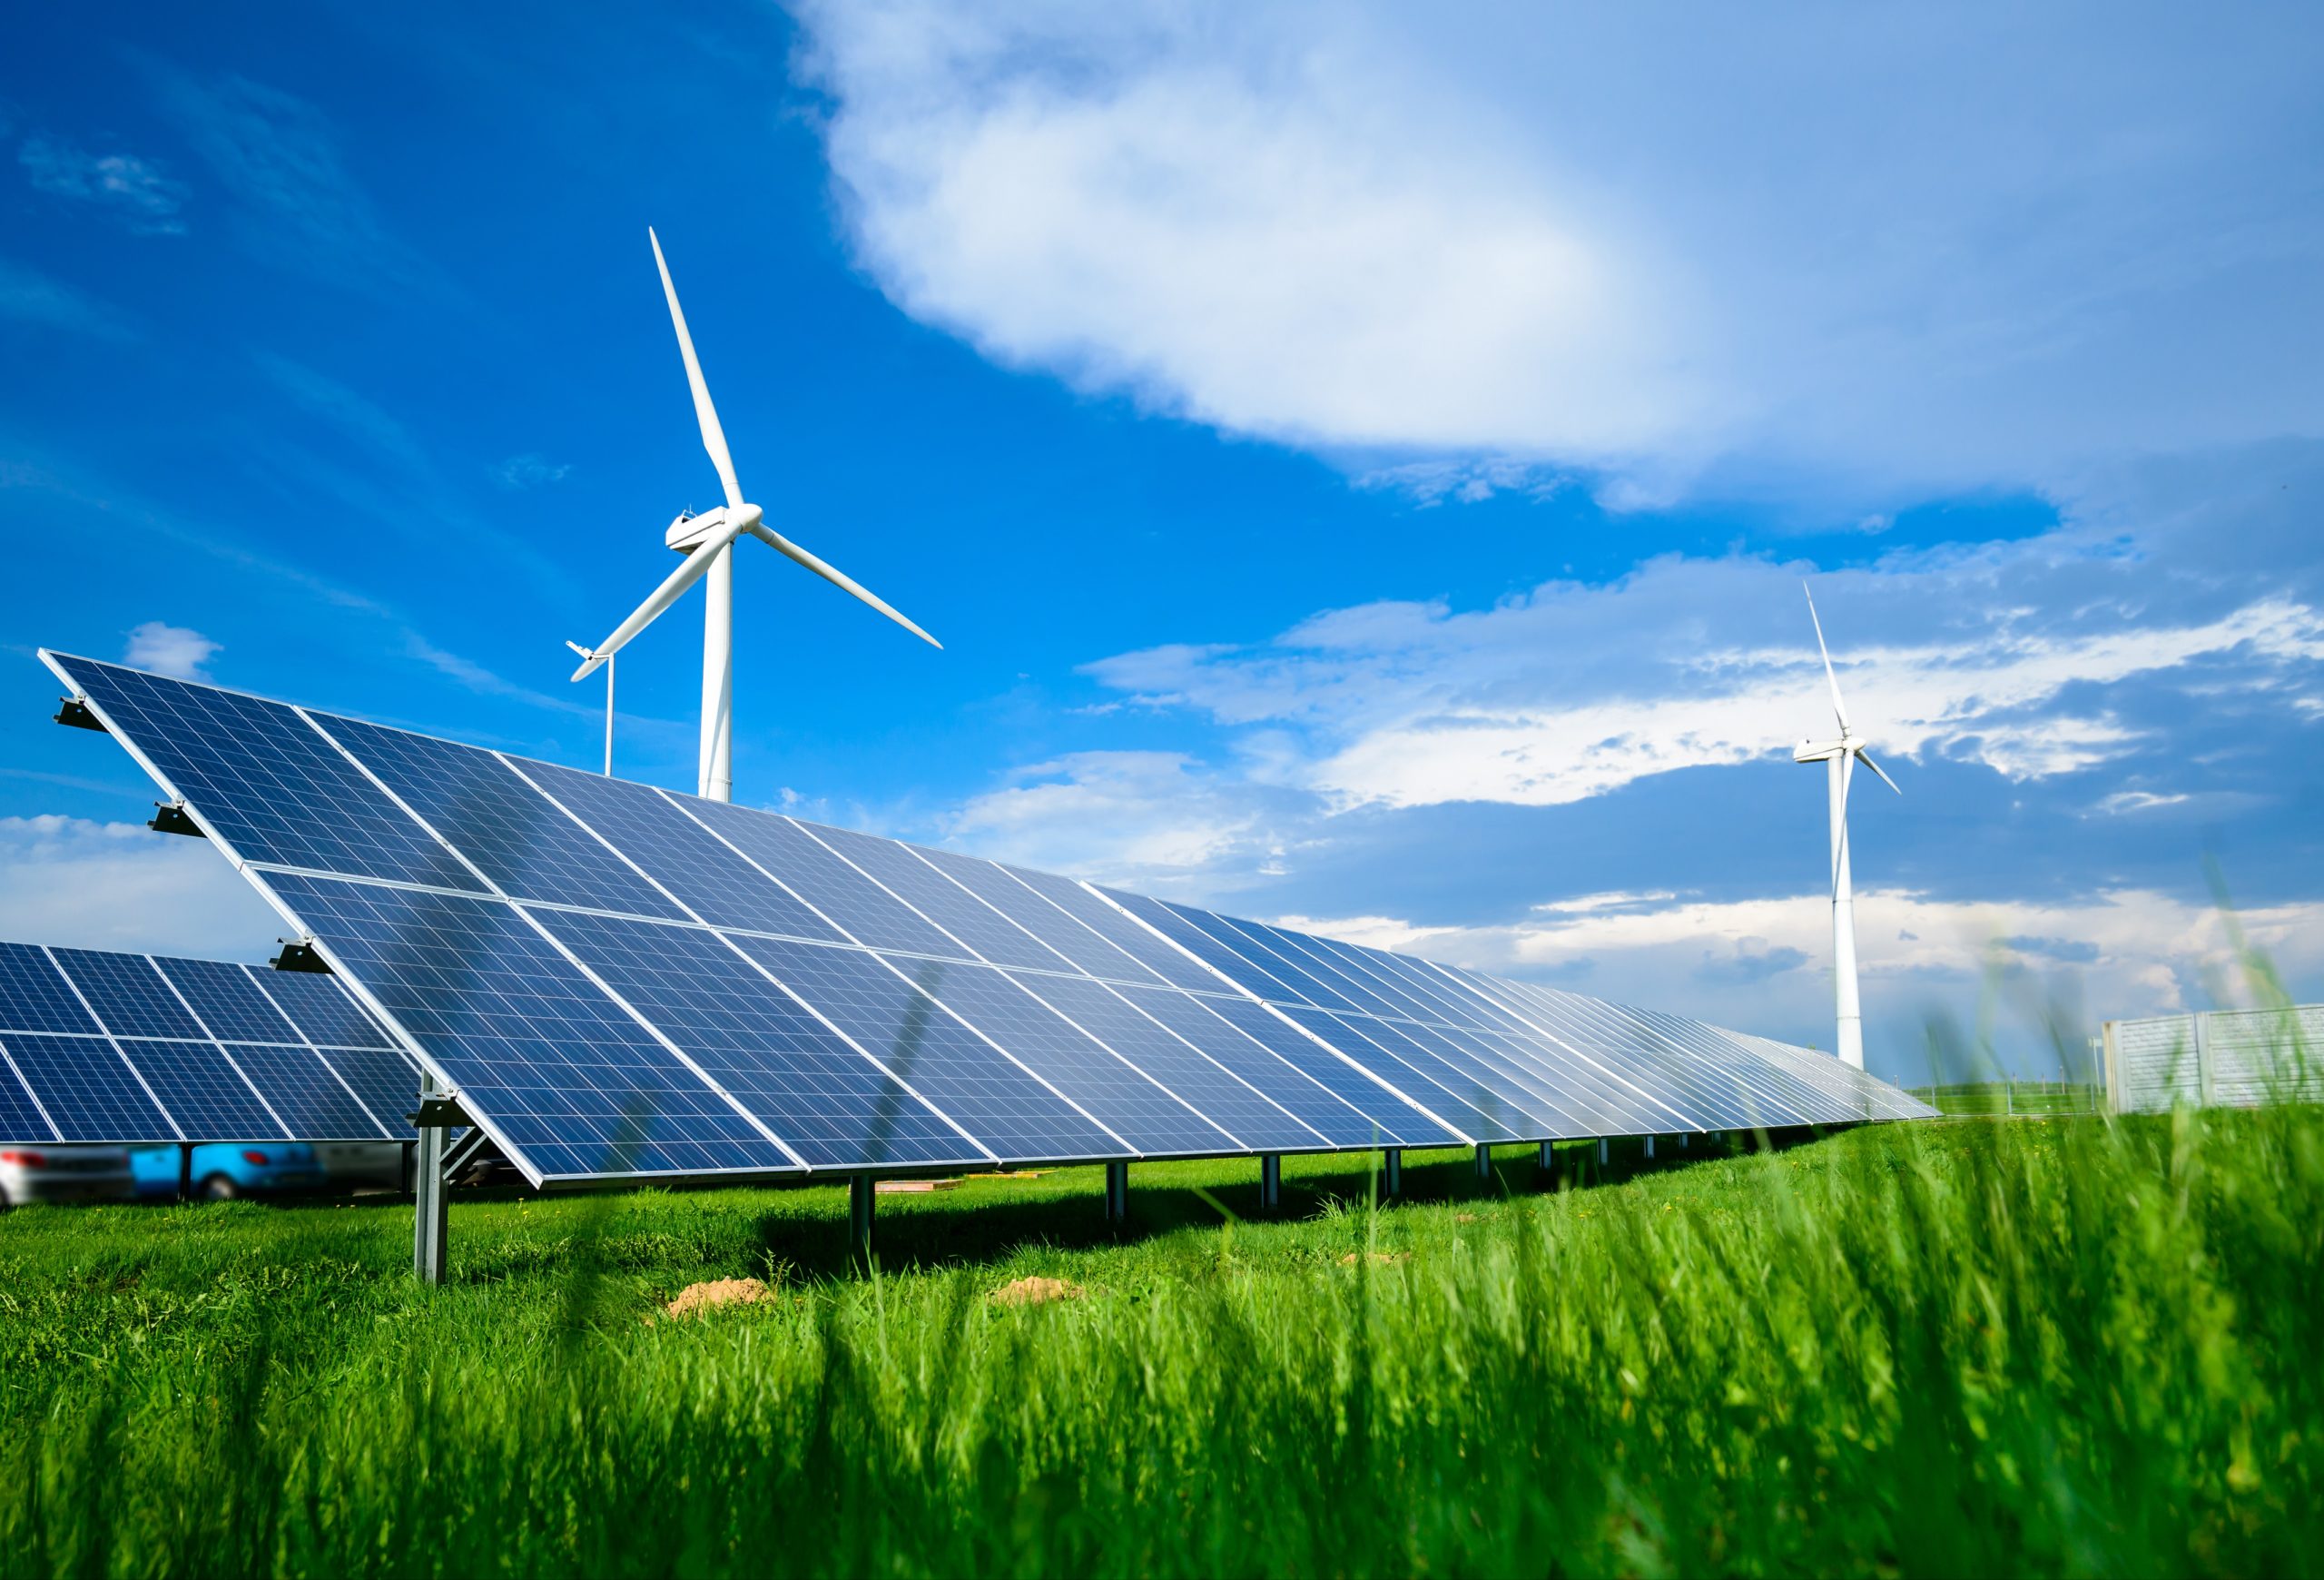 Erneuerbare Energie, Windkrafträder, Sonnenkollektoren in der Natur bei blauem Himmel.